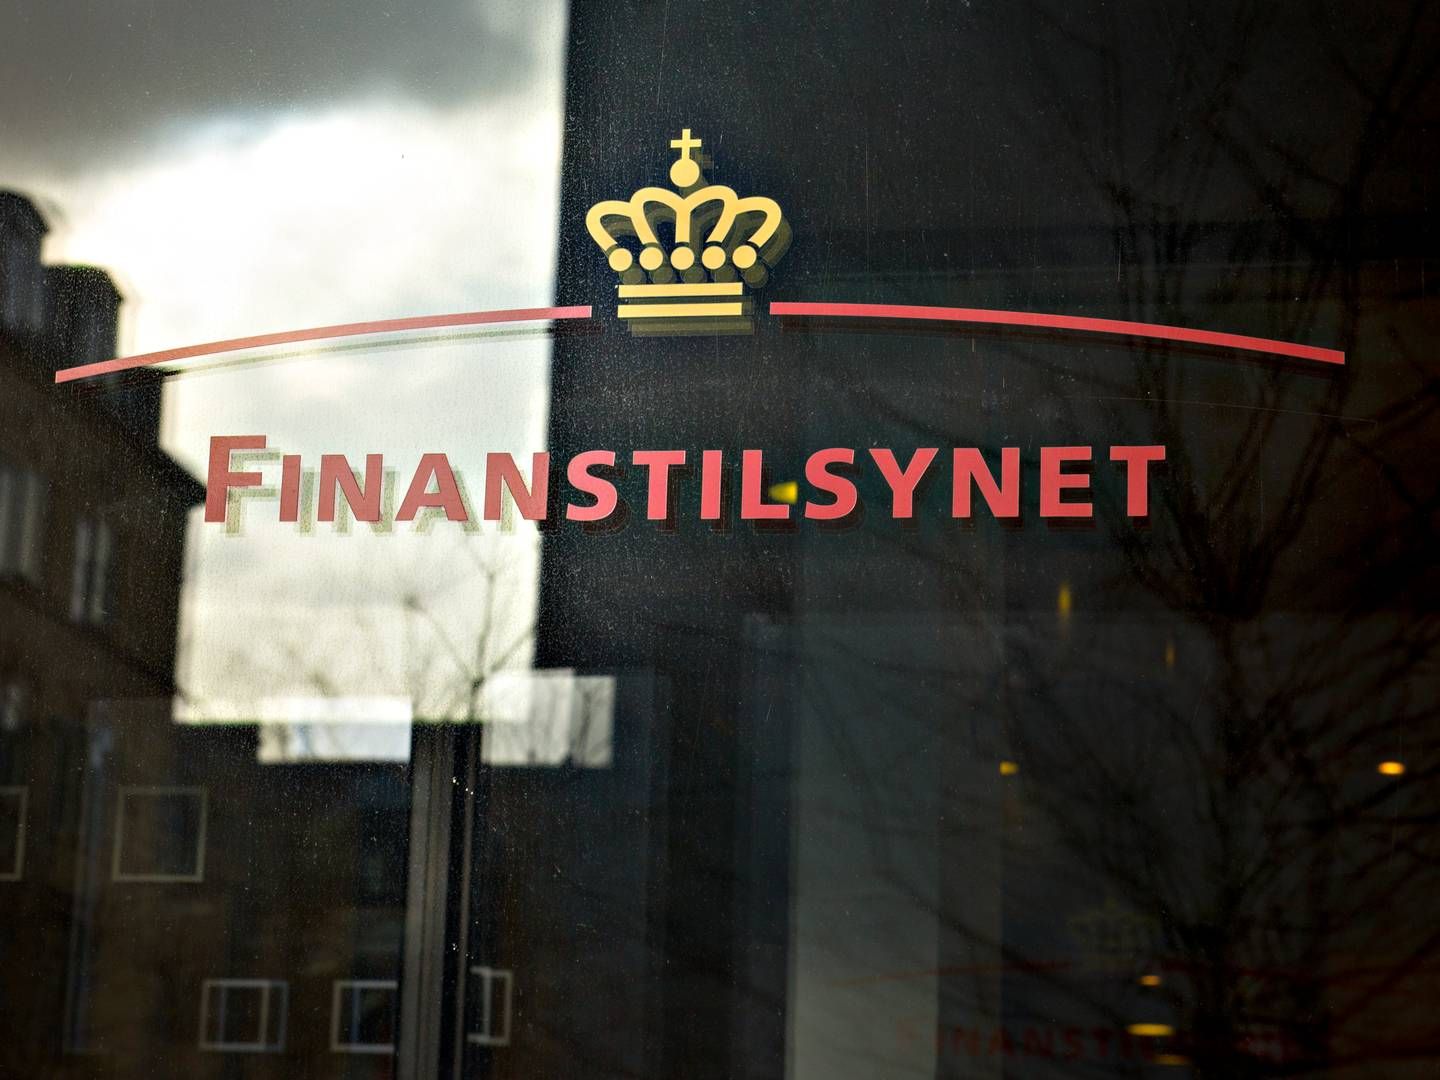 Det er Finanstilsynets ESG-afdeling, som skal stå for at føre tilsyn med crowdfundingtjenesterne. | Foto: Lars Krabbe